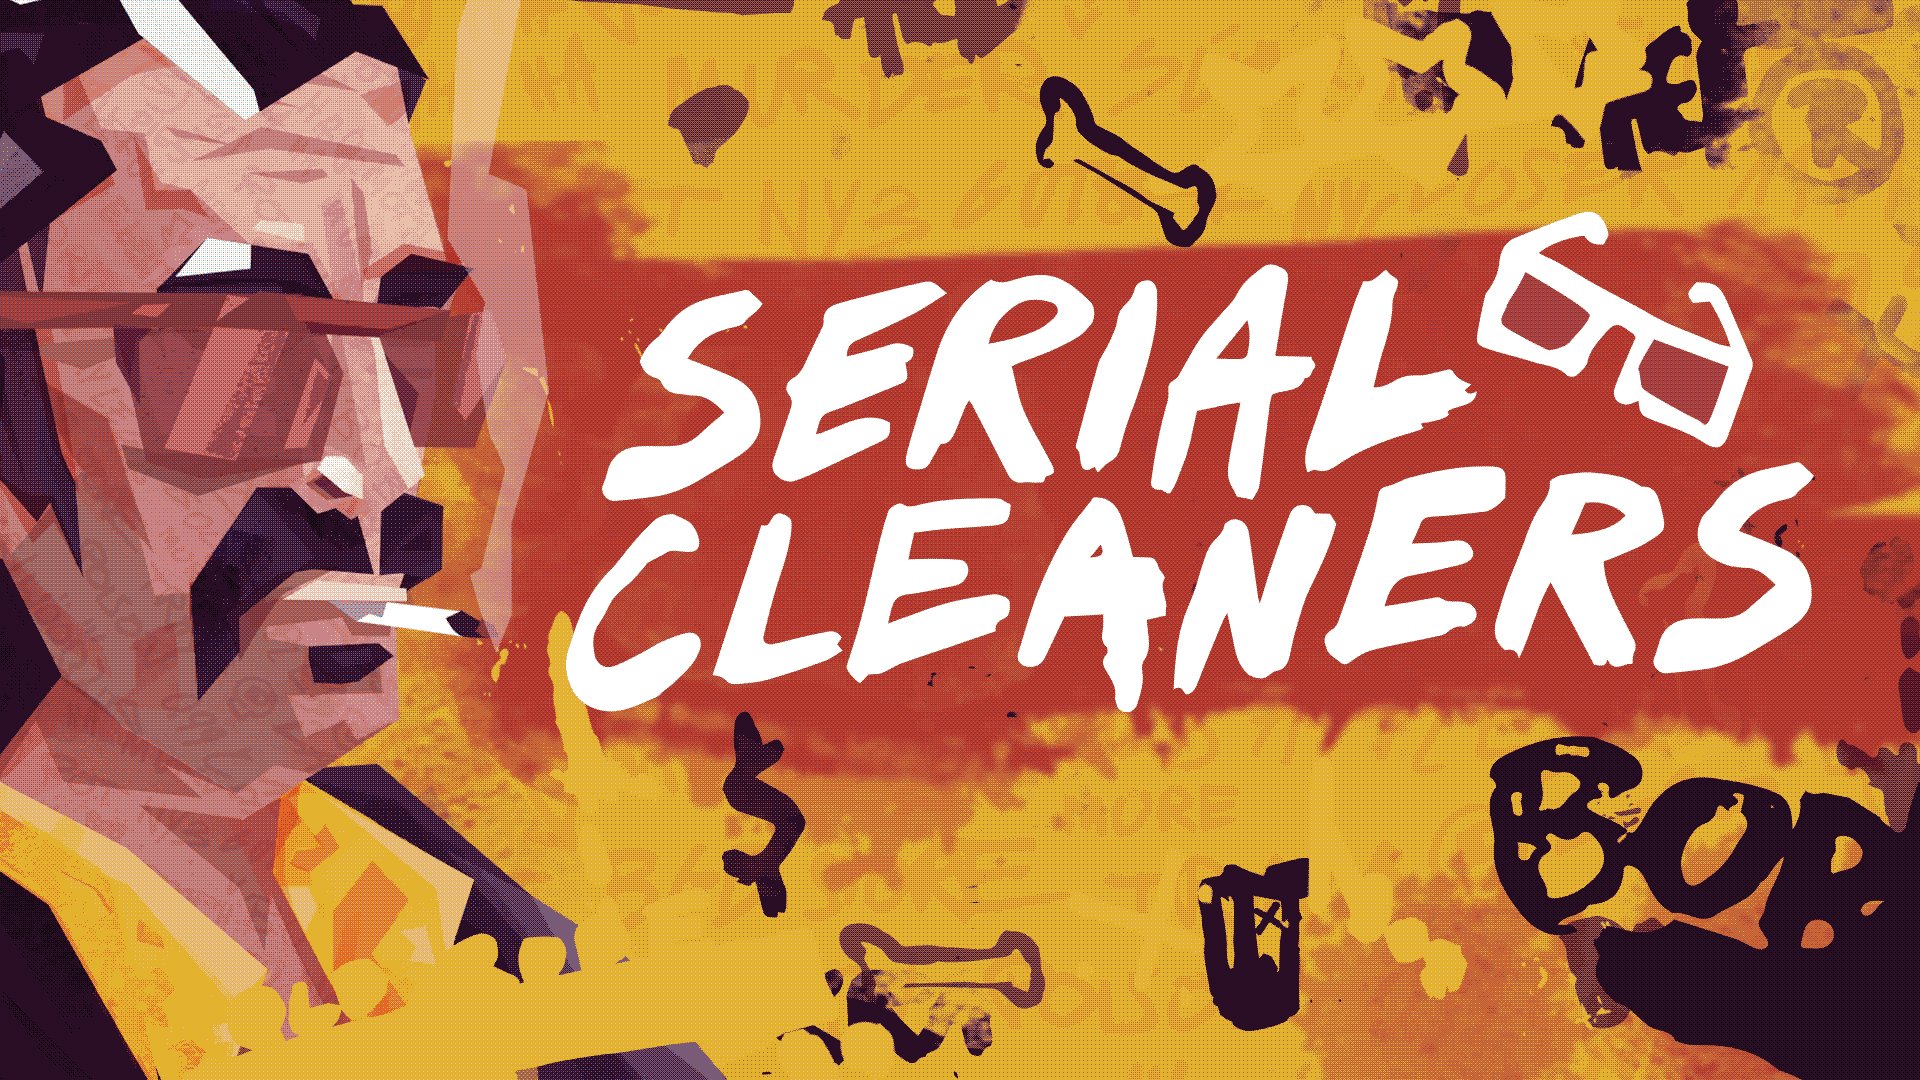 serial-cleaners-hero-image-01.jpg